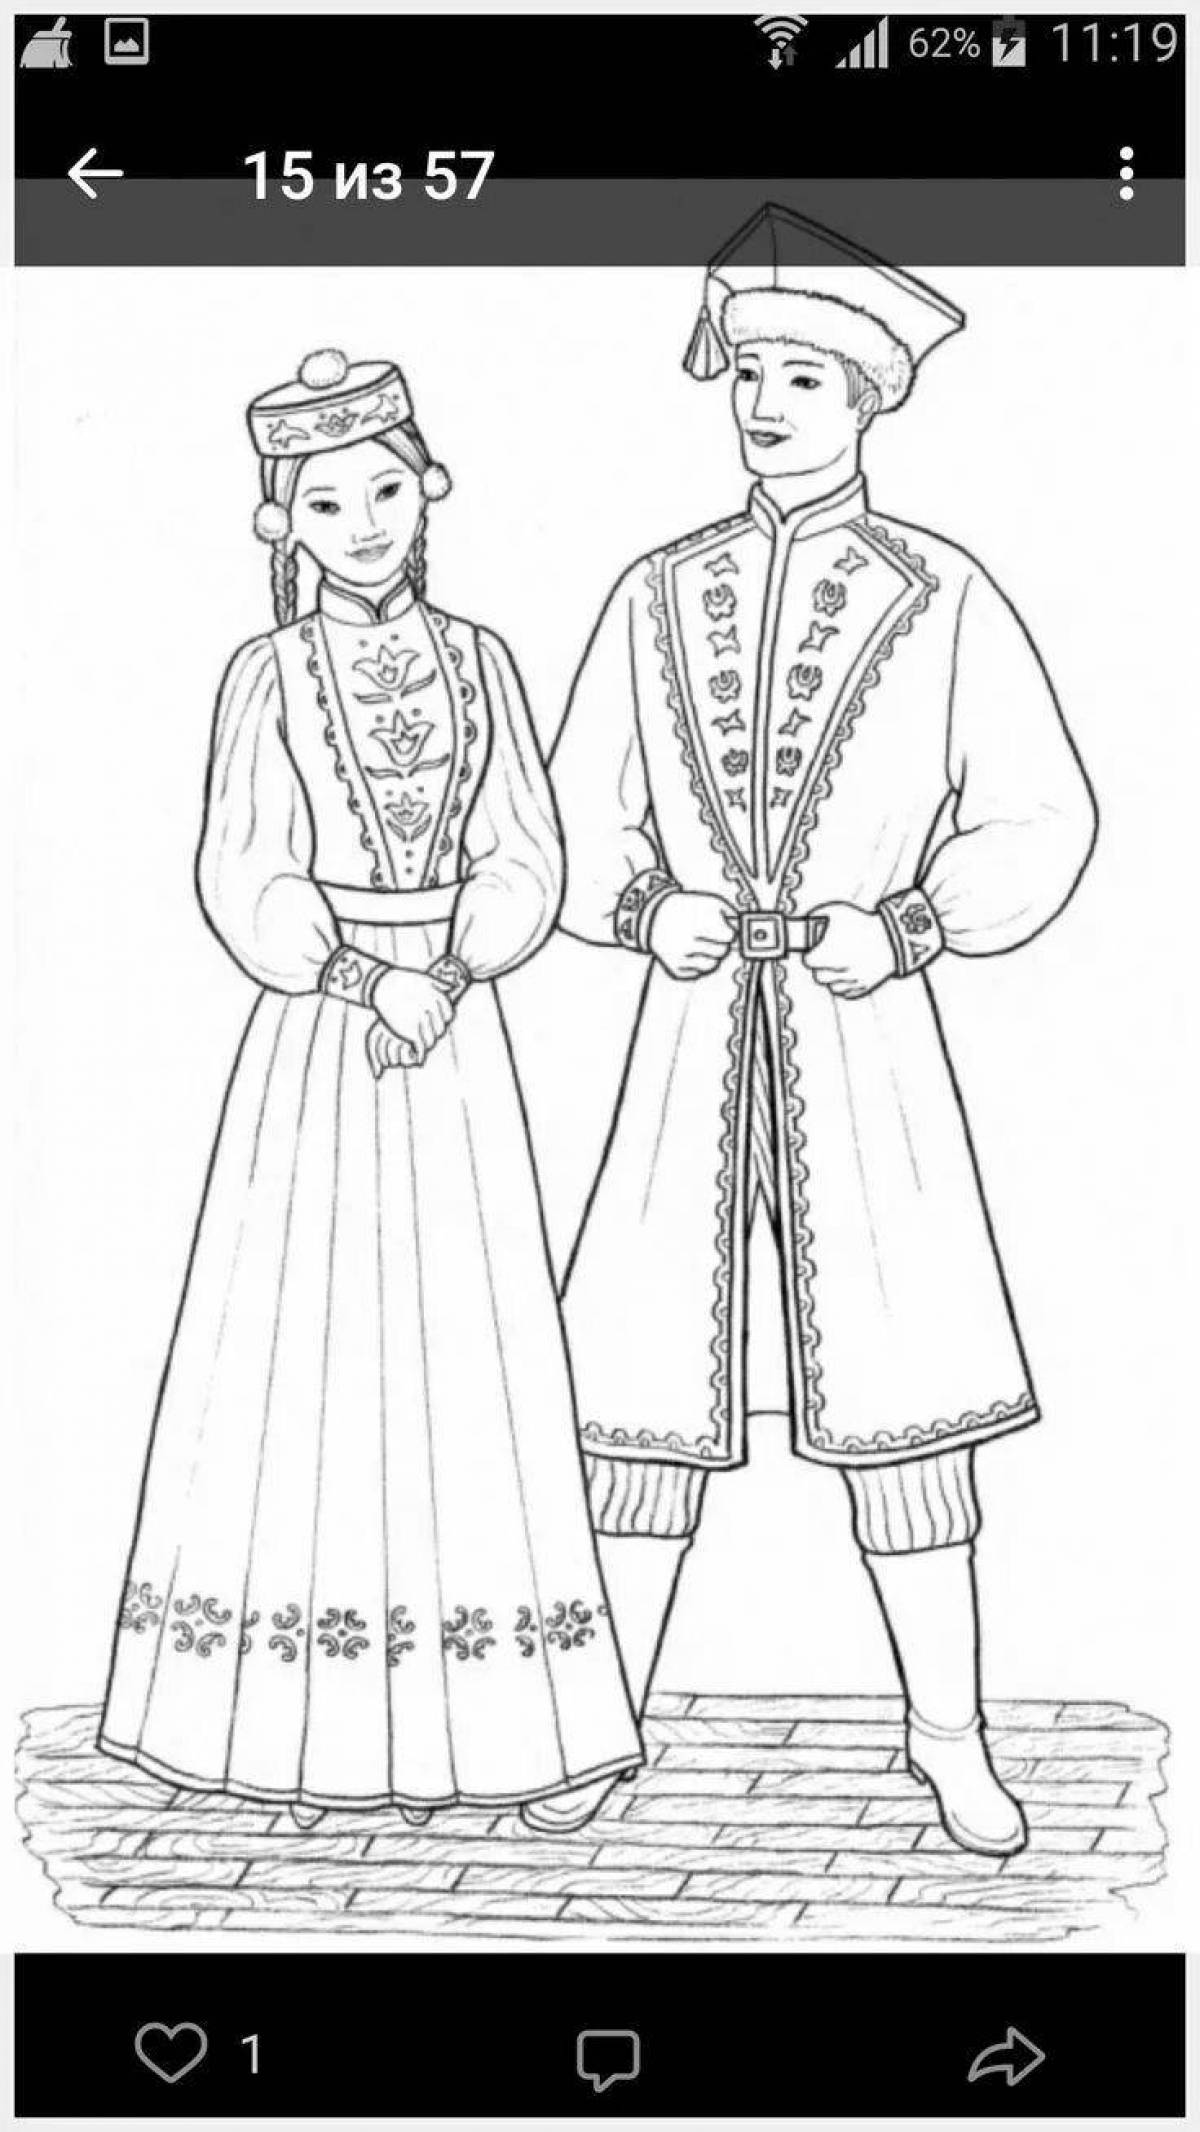 Национальный костюм жителей Бурятии